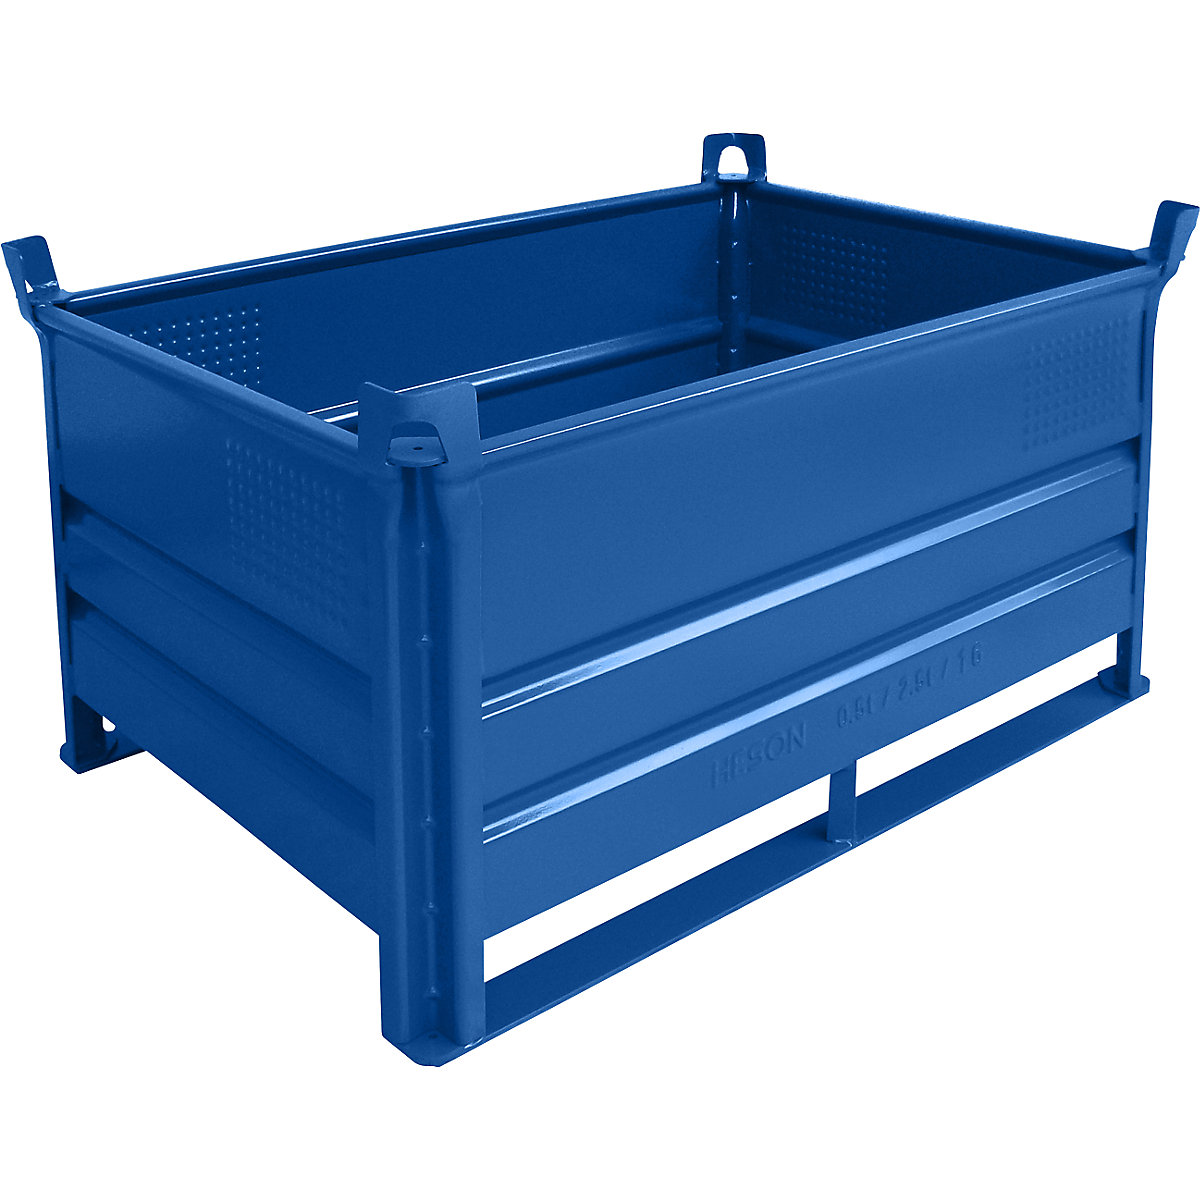 Stohovací přepravka s ližinami – Heson, d x š 1200 x 800 mm, nosnost 500 kg, modrá, od 1 ks-4